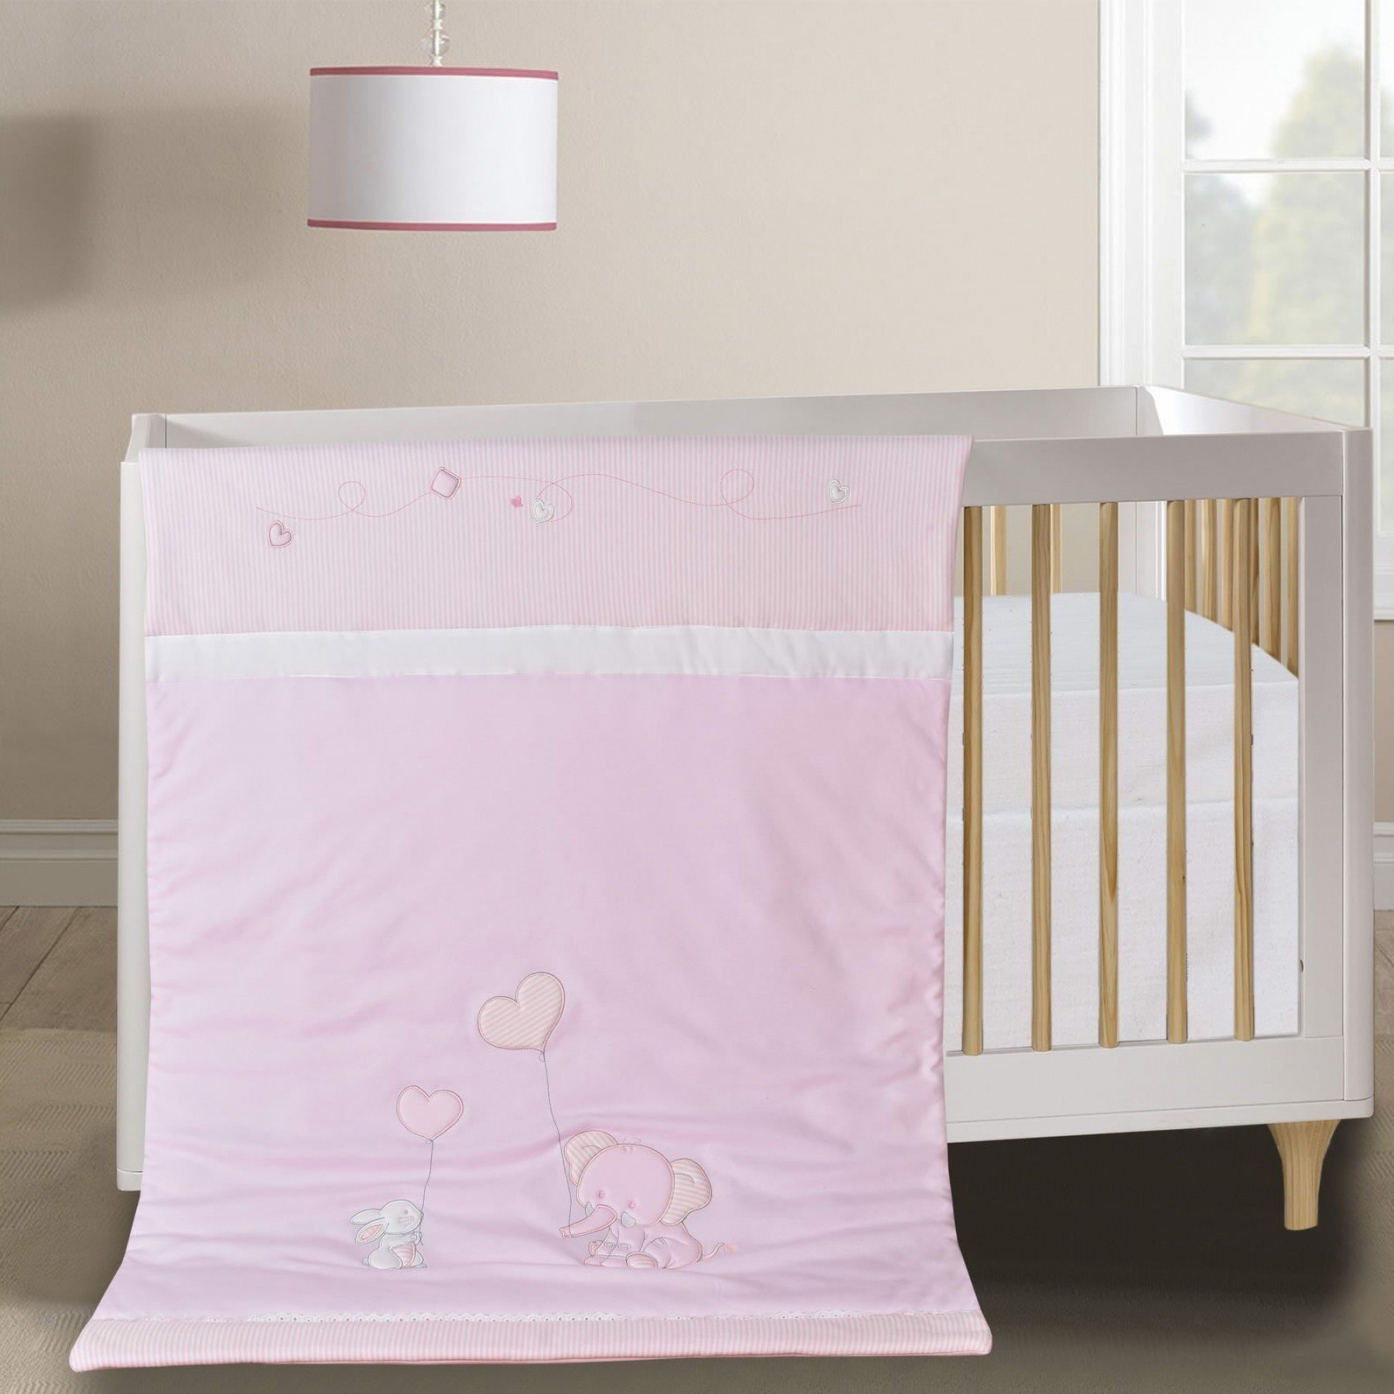 Детское одеяло Слоник цвет: розовый (90х120 см), размер 90х120 см